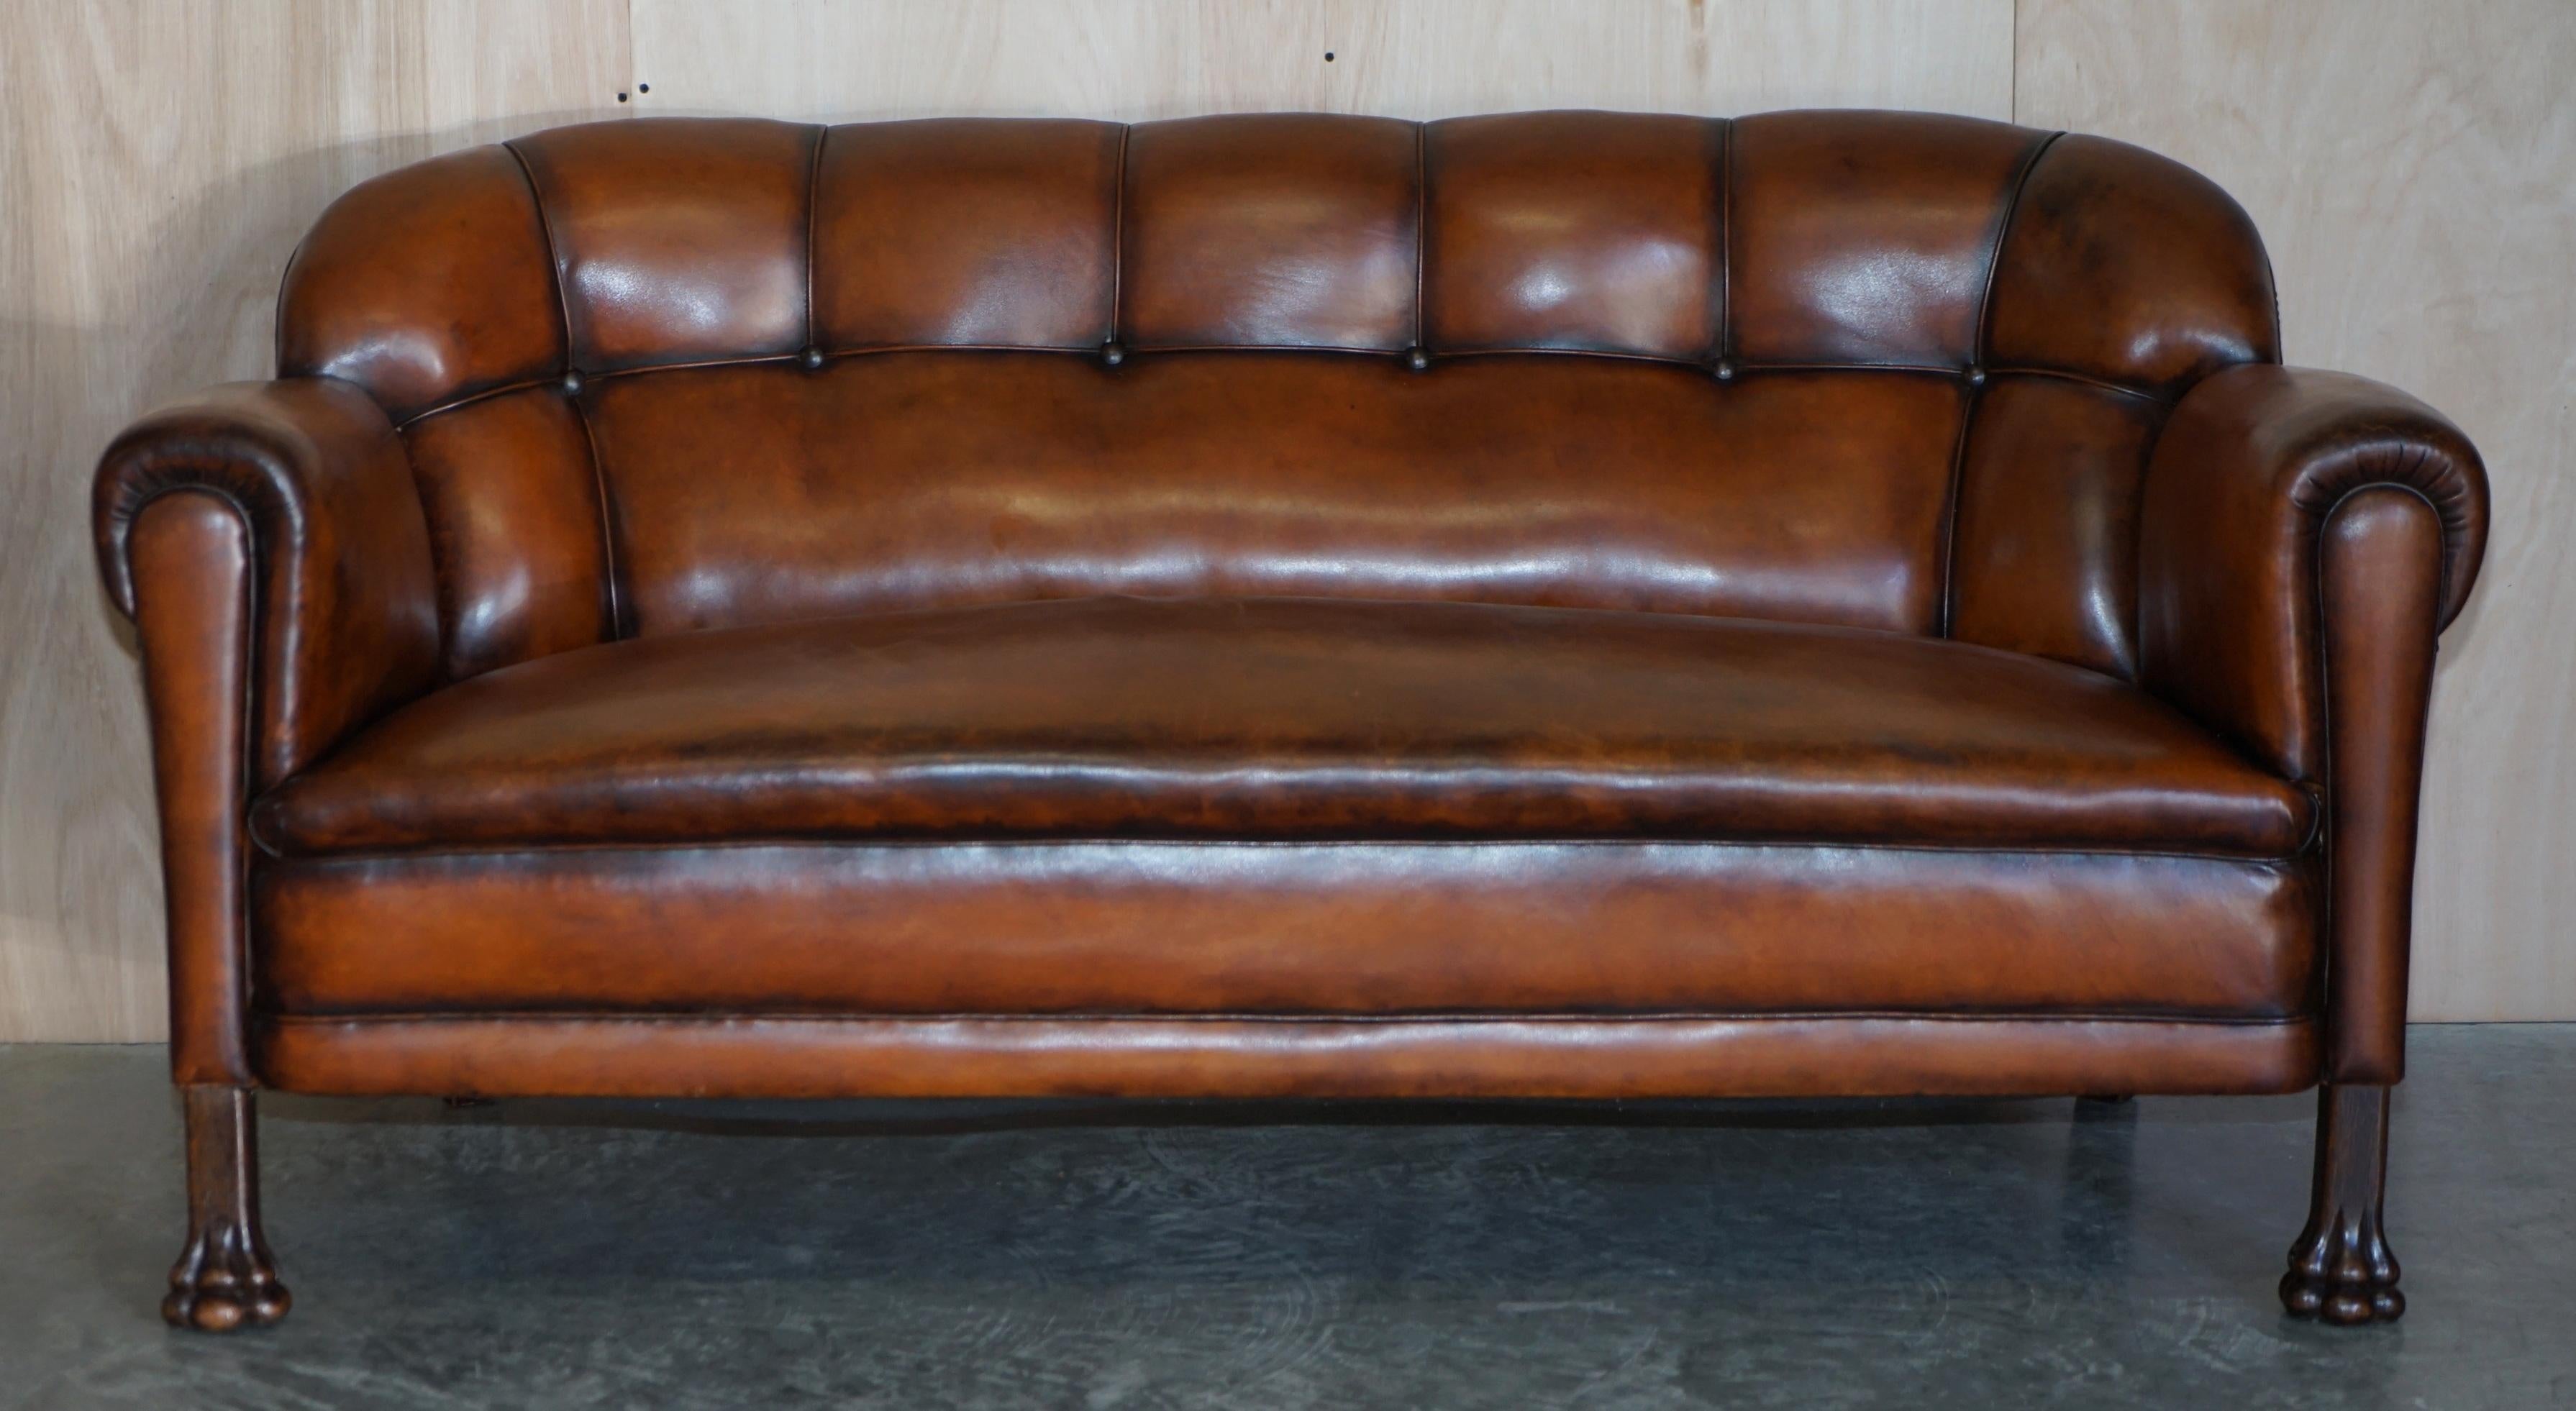 Nous sommes ravis d'offrir à la vente ce canapé Chesterfield en cuir brun suédois vieilli, entièrement restauré, avec des pieds en chêne sculptés à la main en forme de pattes de lion.

Ce piètement de canapé est très décoratif et